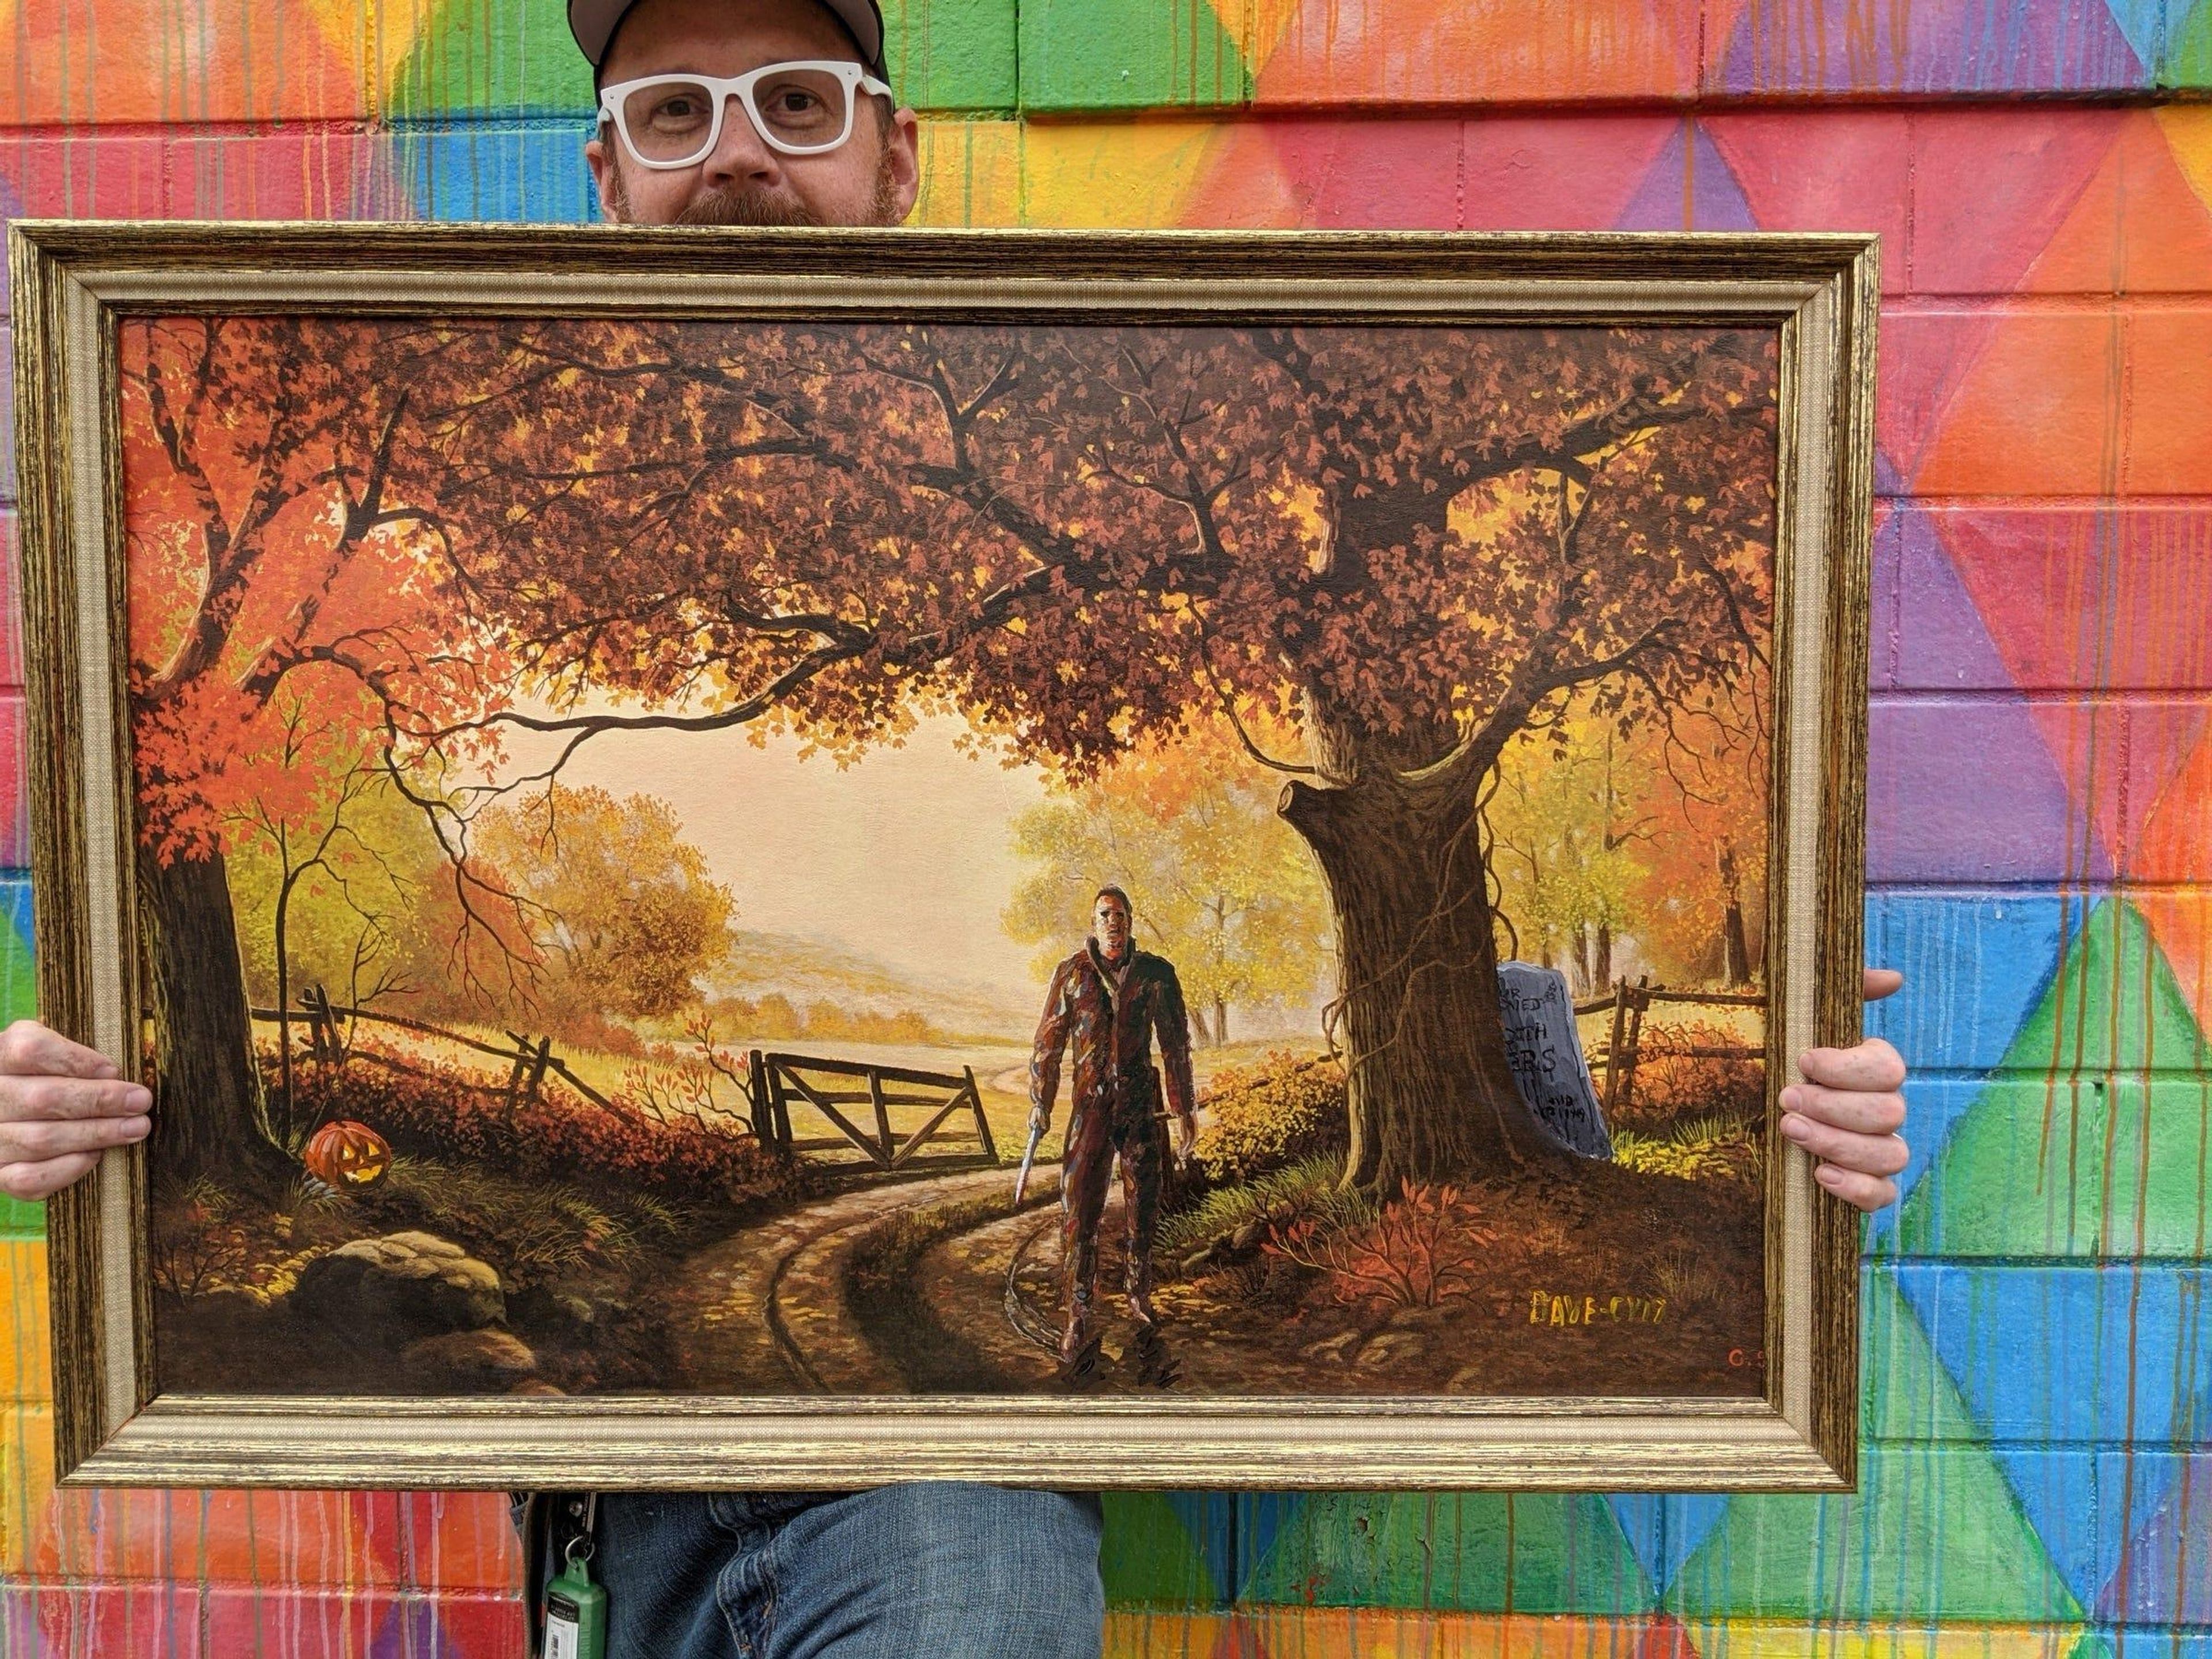 David Sherrill posa con un cuadro de Michael Myers, el antagonista de la saga 'Halloween', pintado sobre un sereno fondo otoñal.